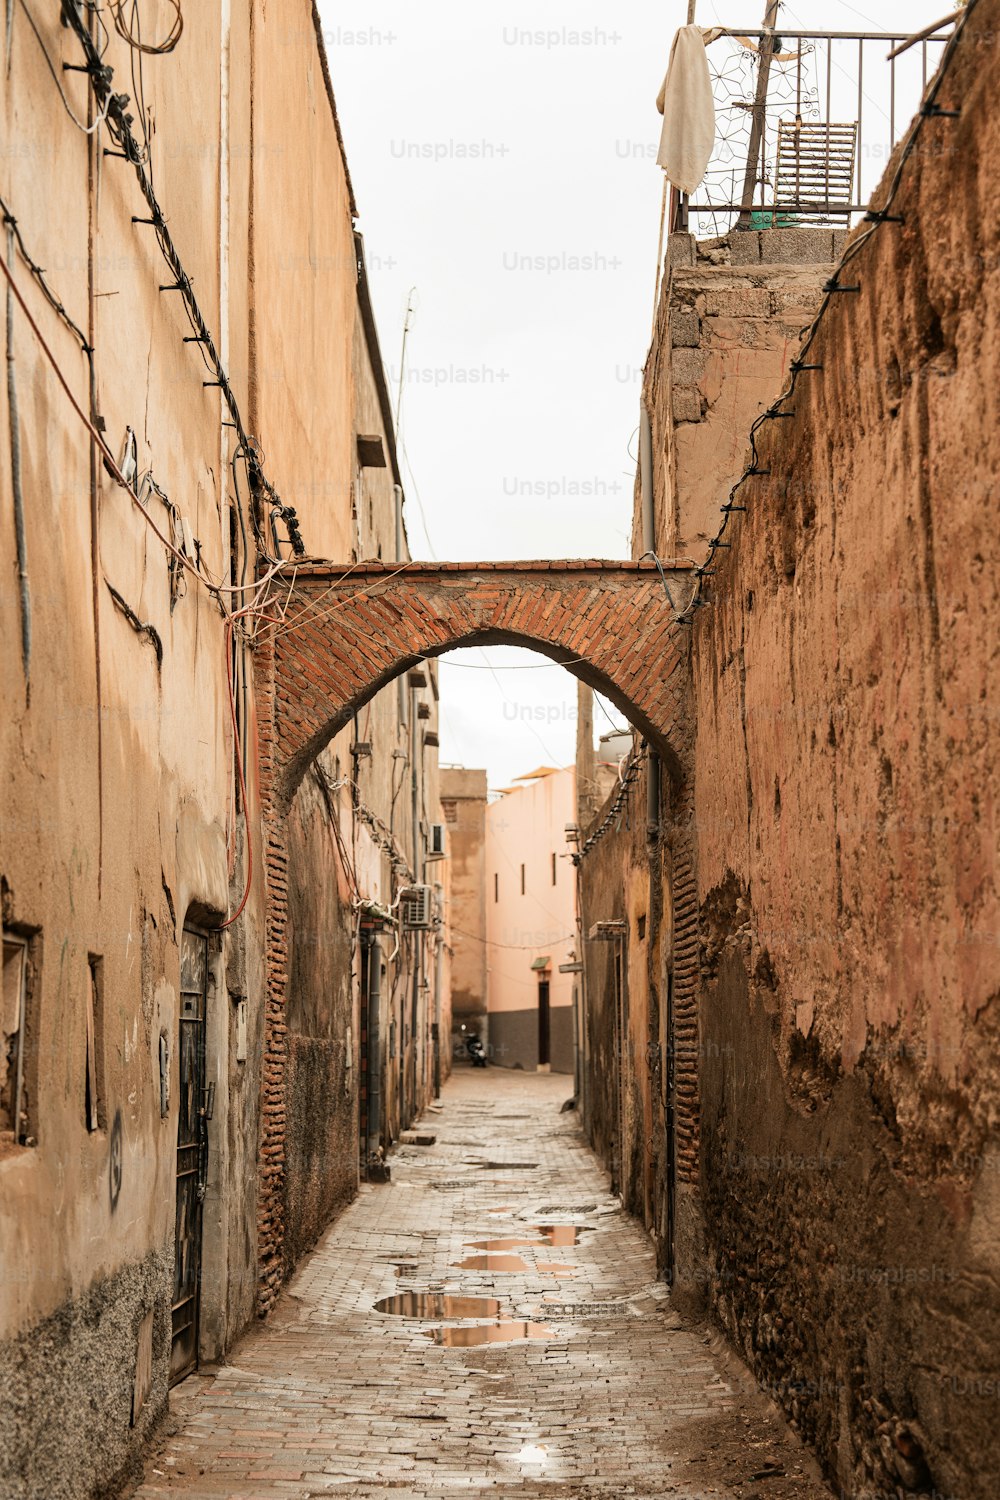 a narrow alley way with a brick bridge over it